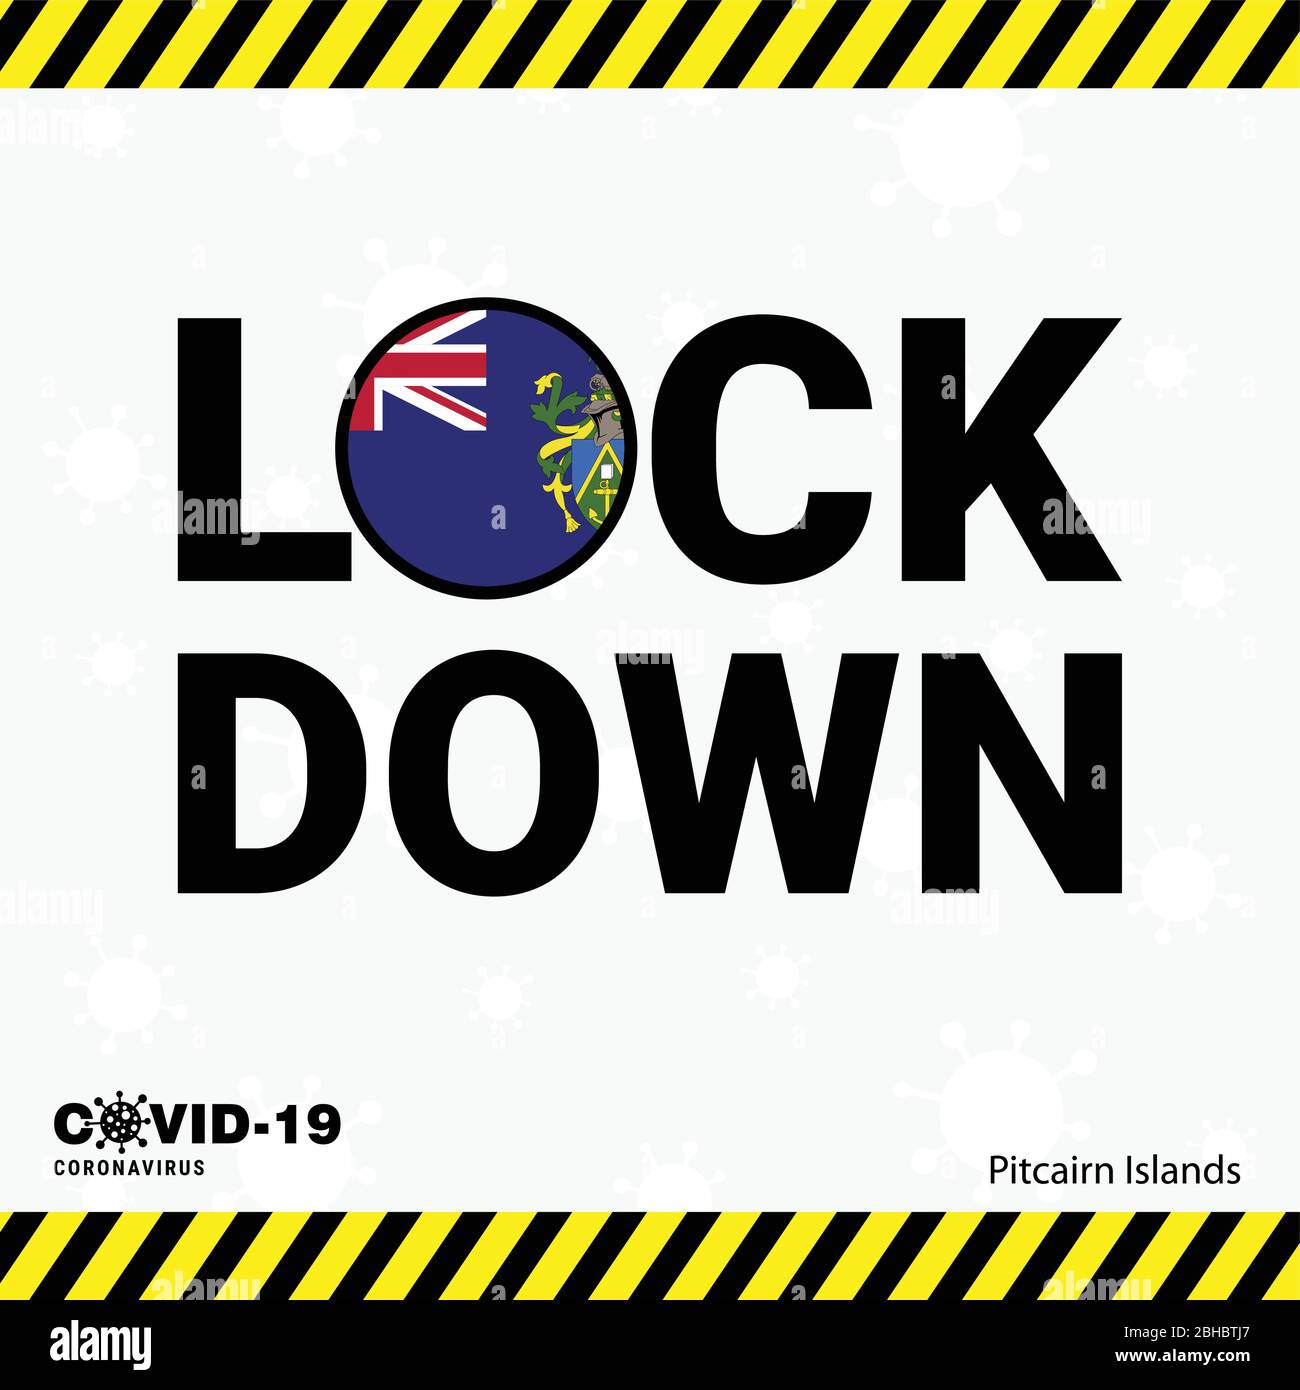 Coronavirus Pitcairn Islnand Lock DOwn Typography with country flag. Coronavirus pandemic Lock Down Design Stock Vector